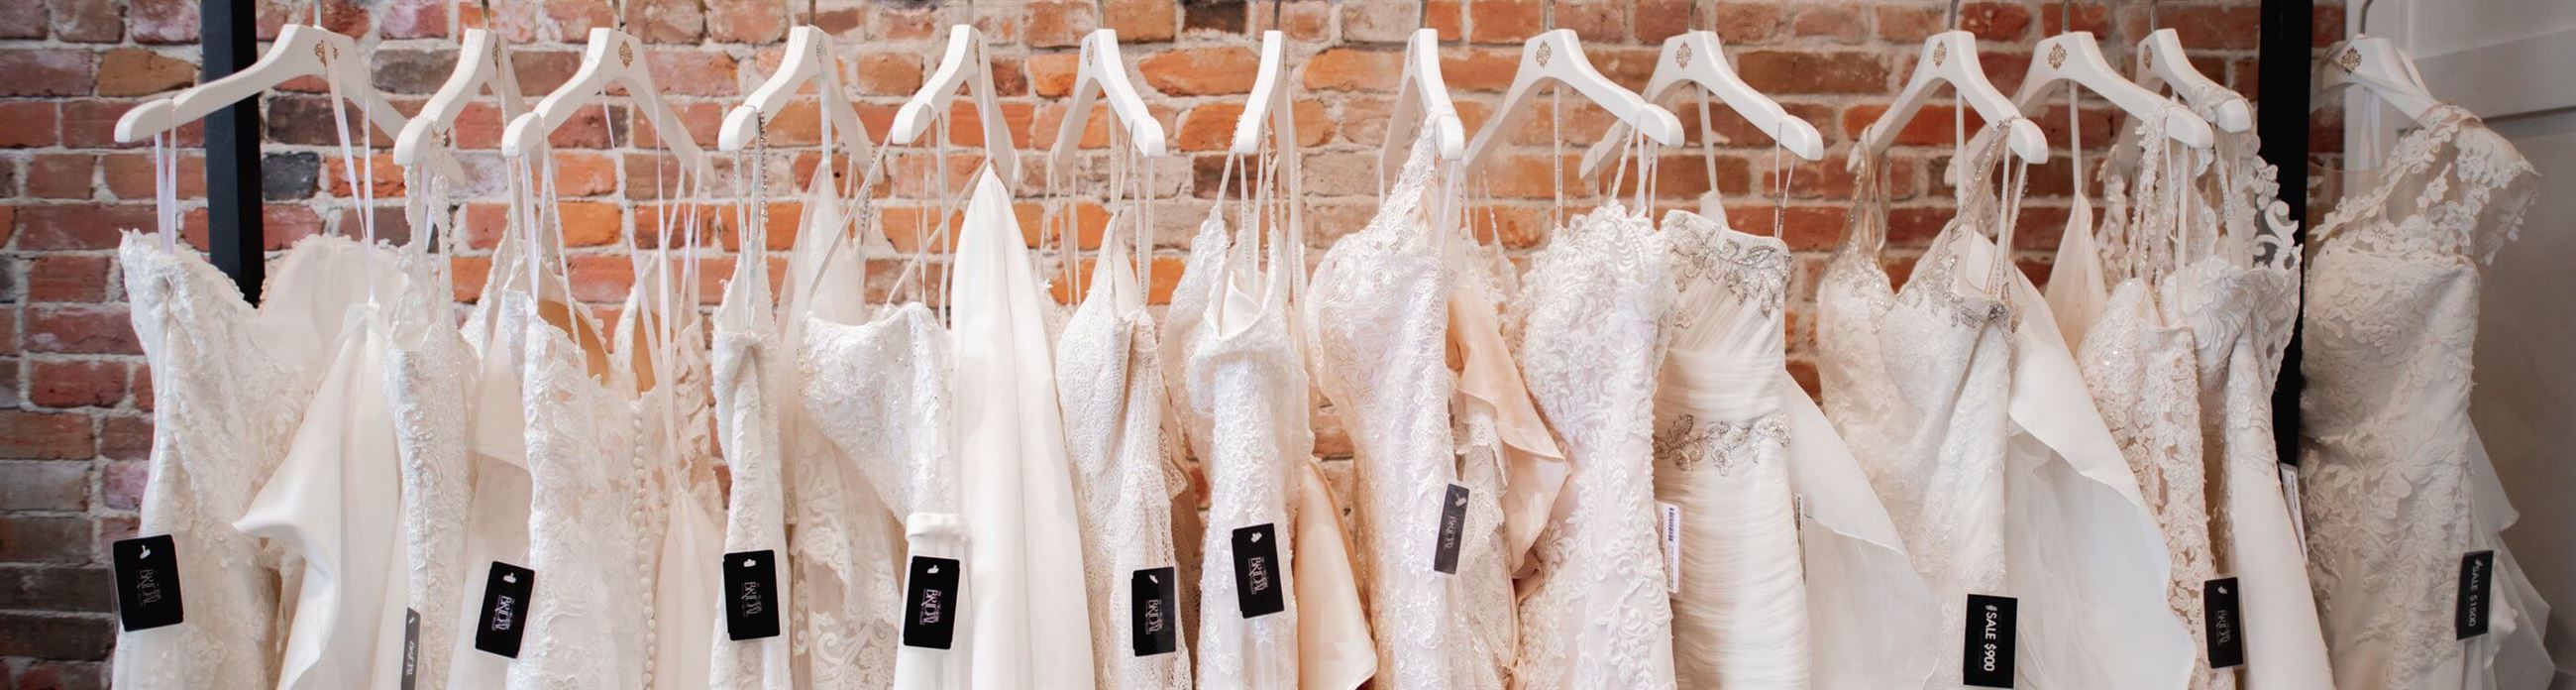 Wedding dresses on racks